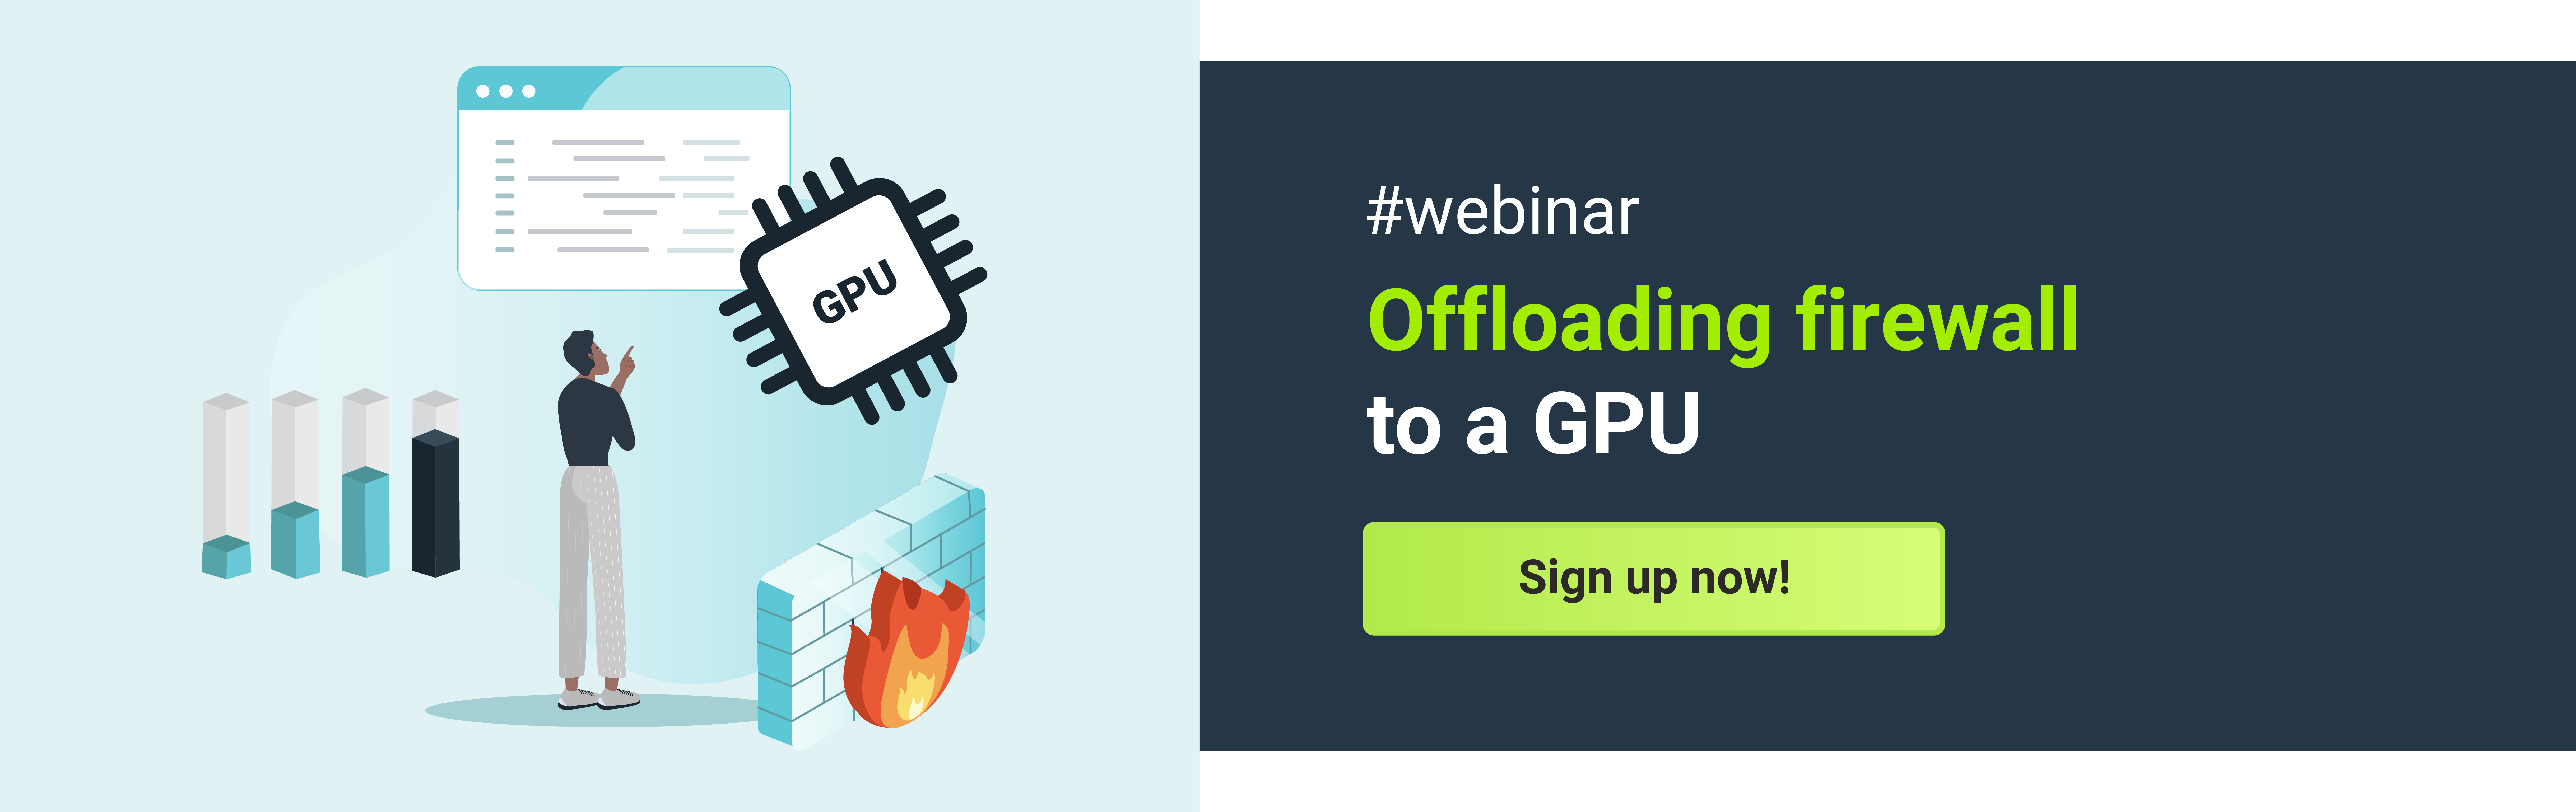 Webinar offloading firewall to a GPU